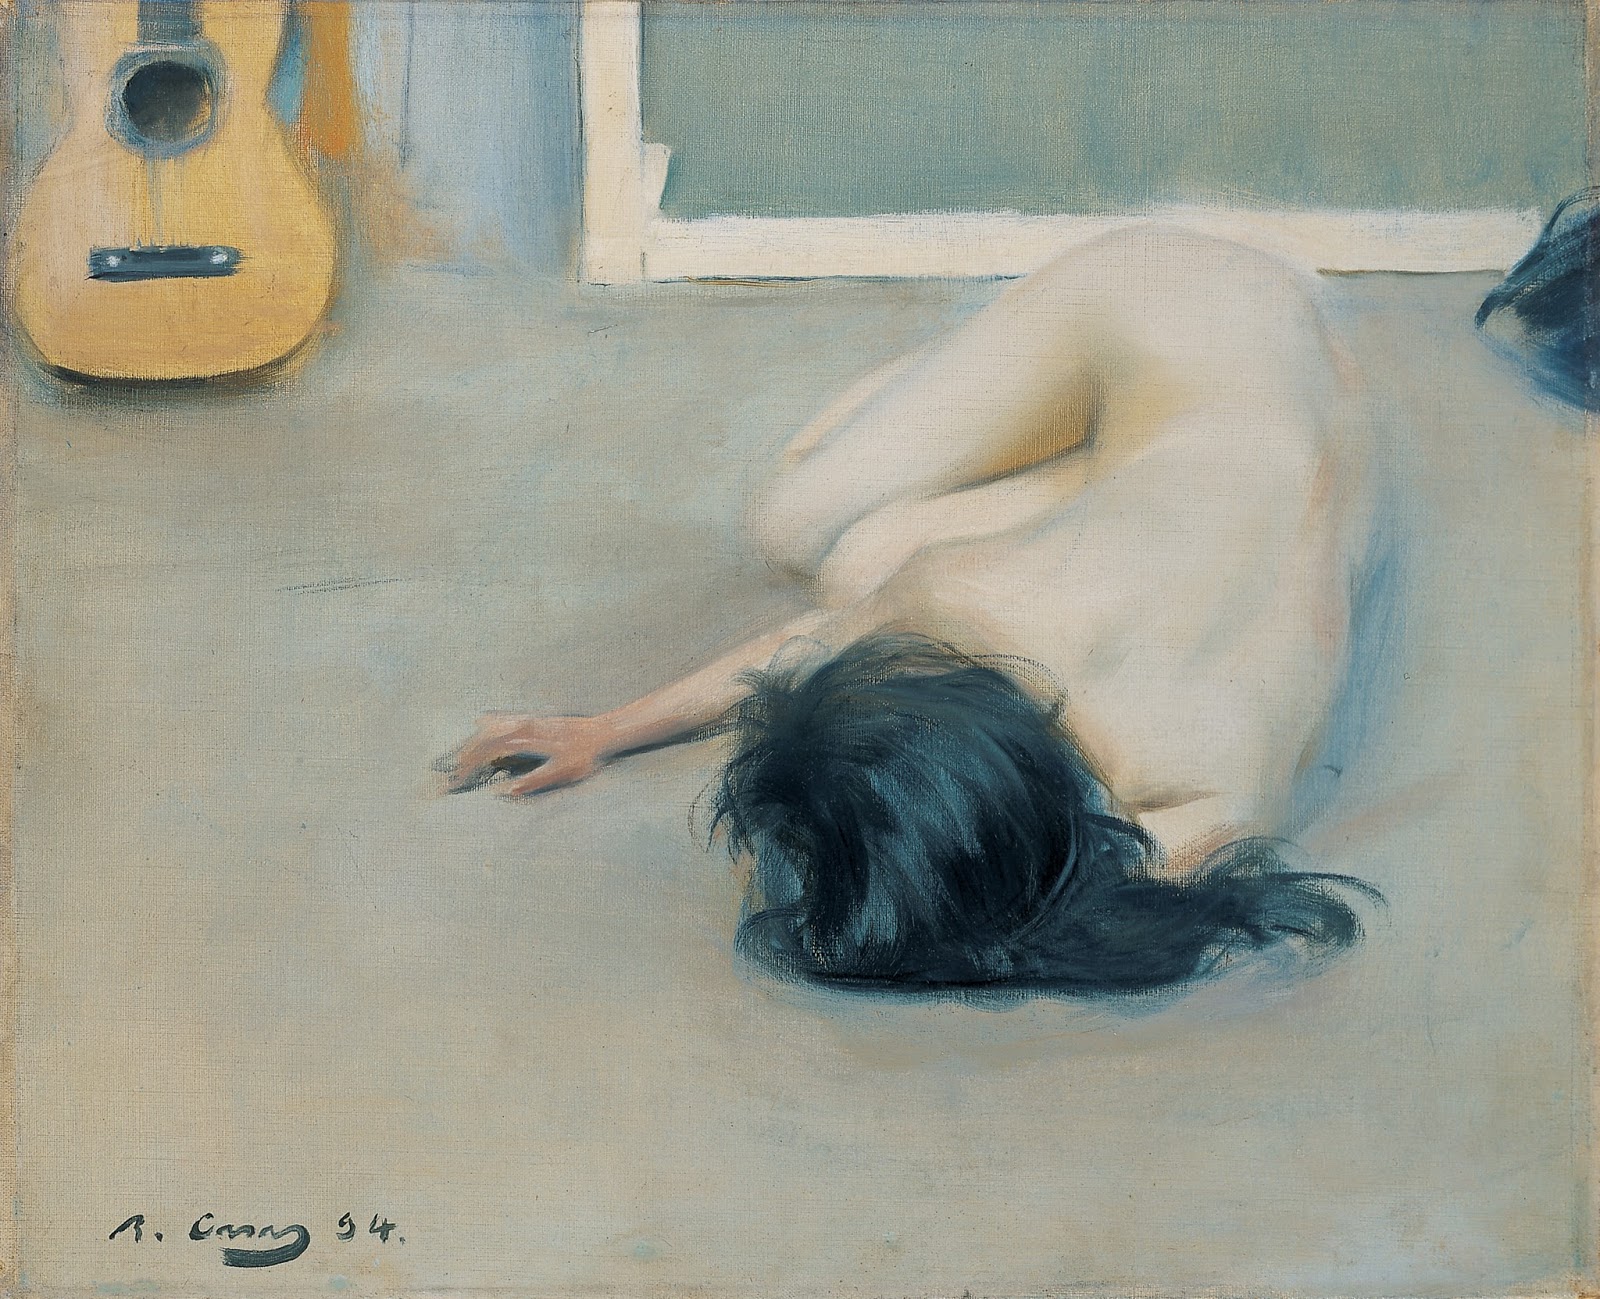 裸體與吉他 by Ramon Casas - 1894 - 46.3 x 56.6 釐米 